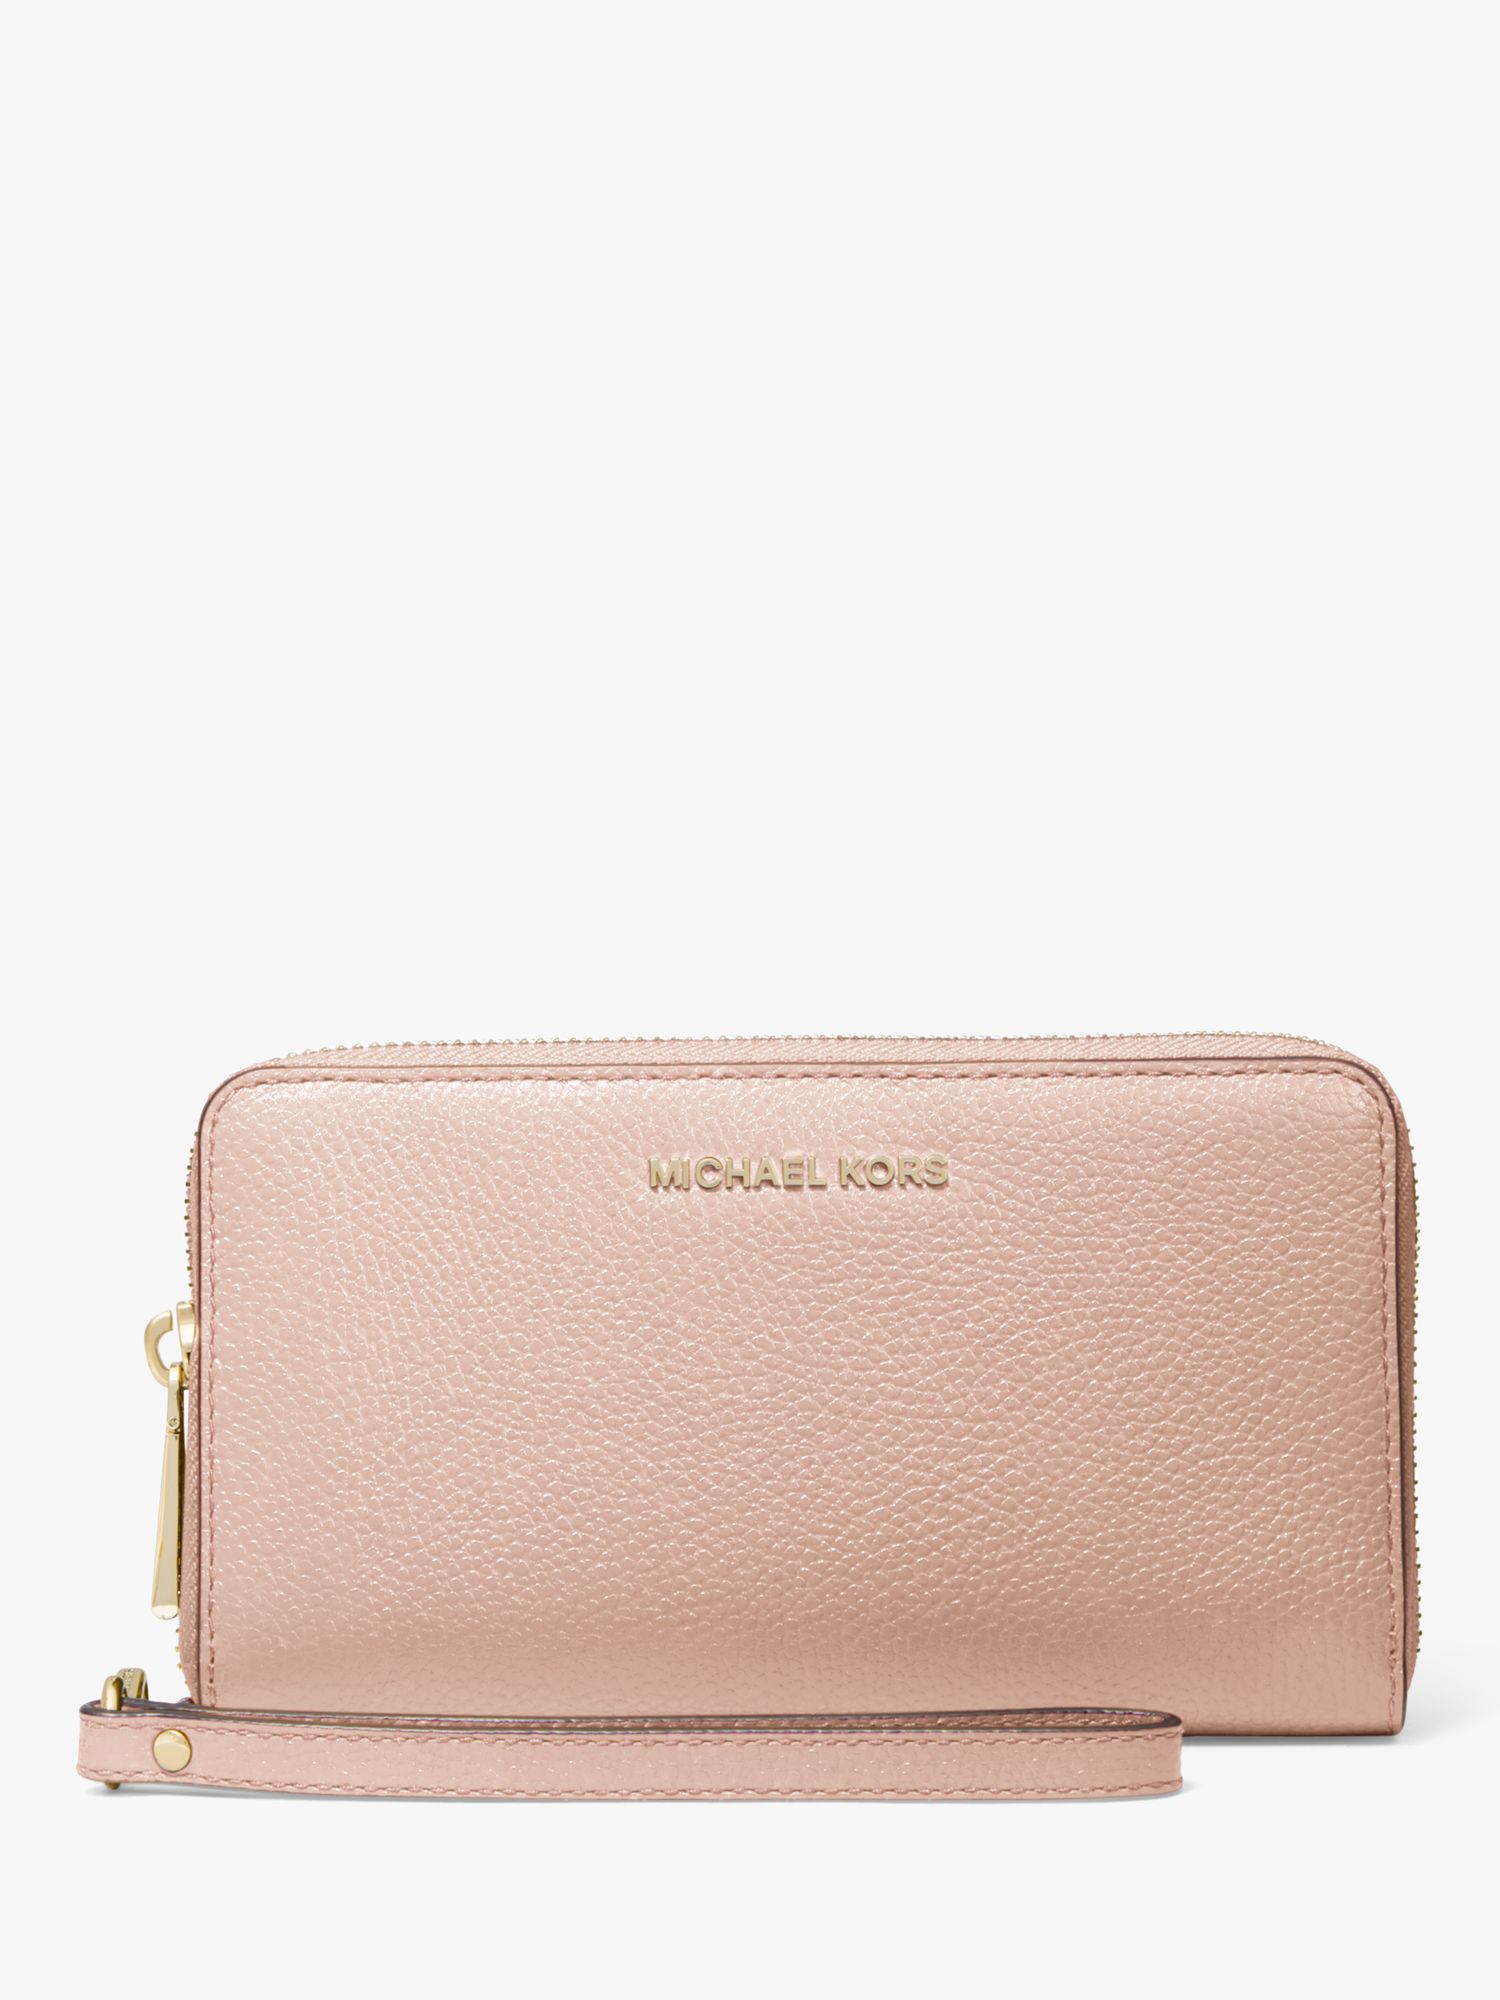 light pink michael kors wallet